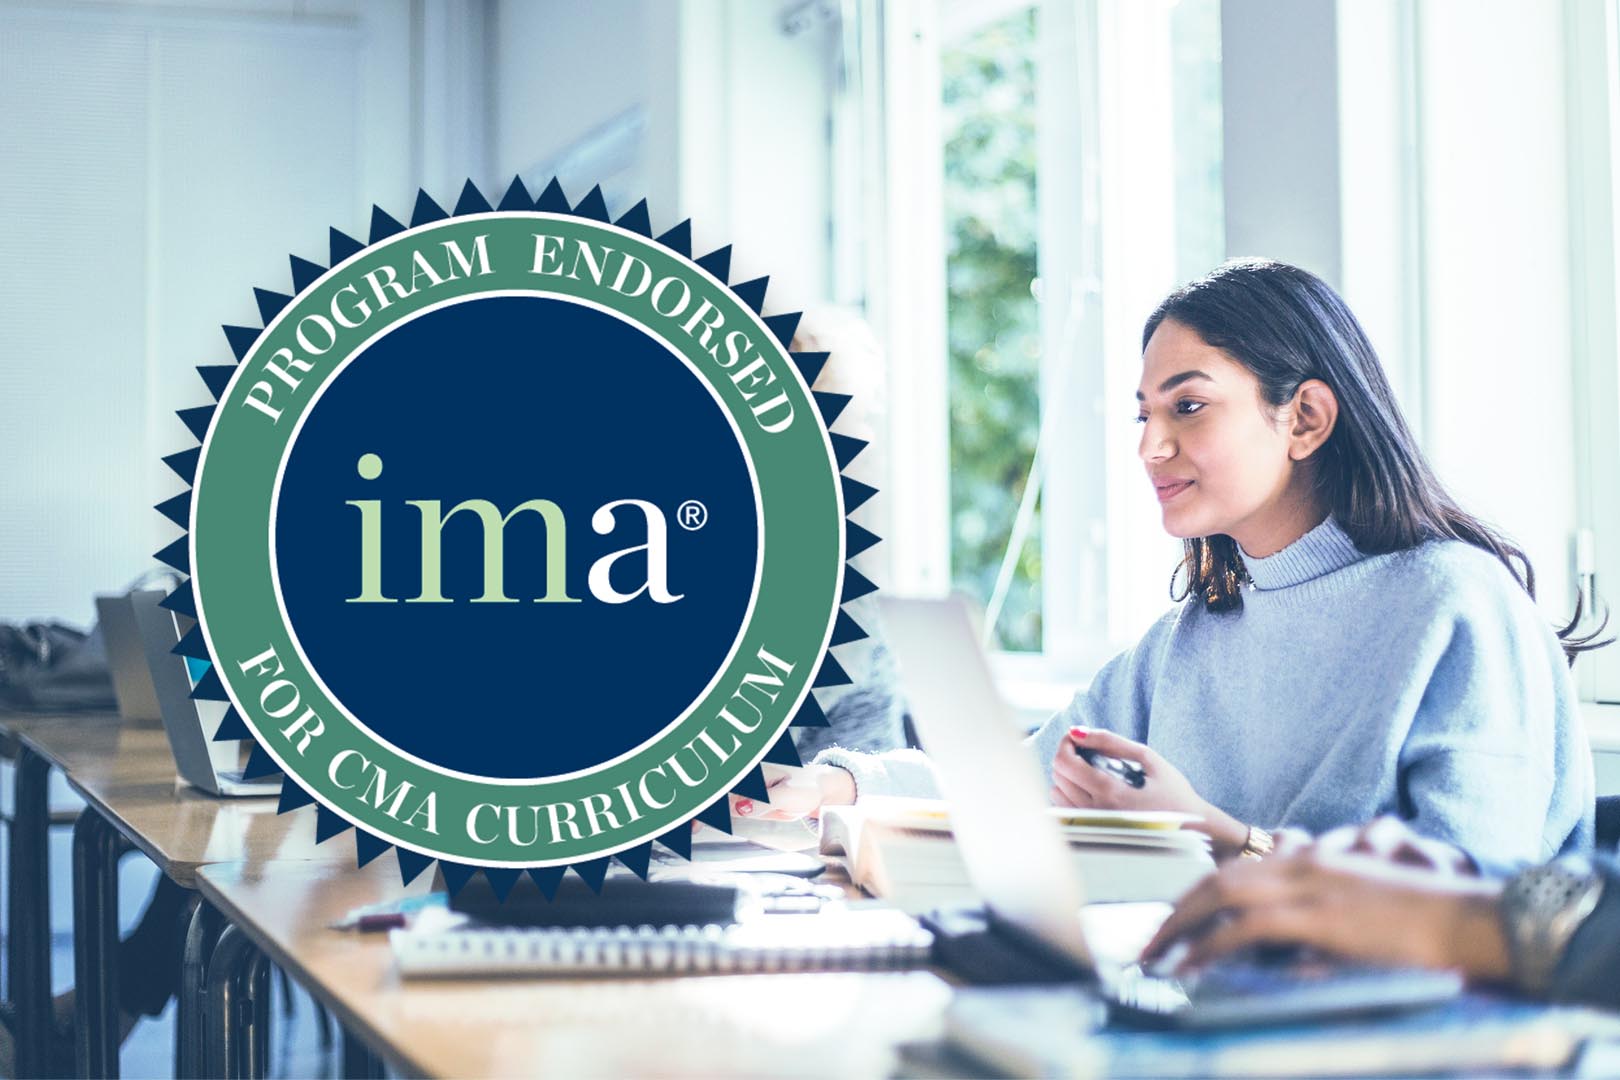 Institute of Management Accountants program endorsed for CMA curriculum seal